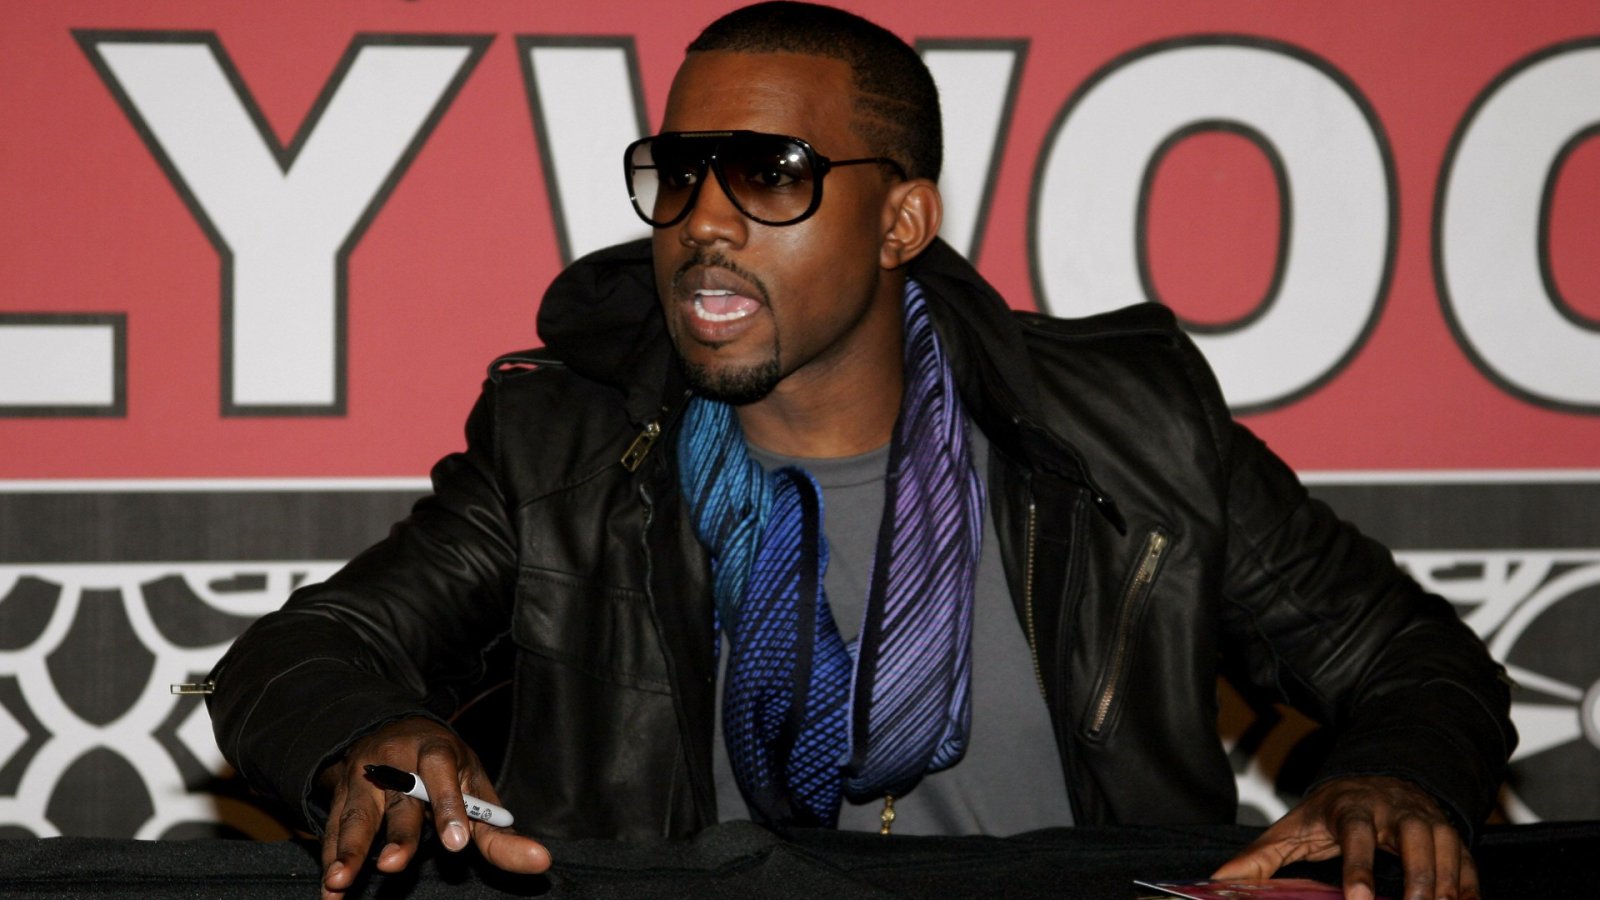 A maior queda de um artista: Kanye West e as marcas cortando laços